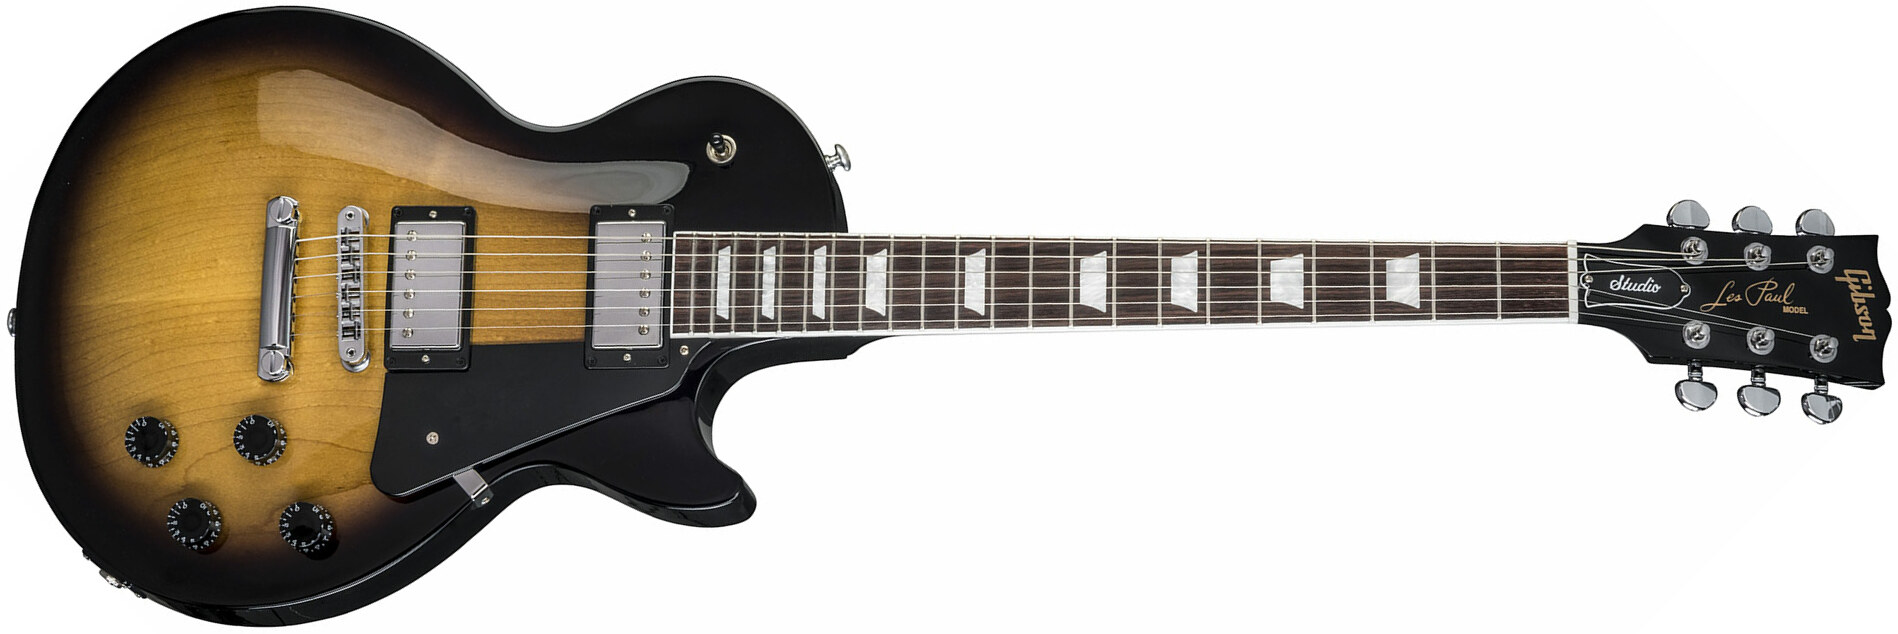 Gibson Les Paul Studio 2018 - Vintage Sunburst - Guitarra eléctrica de corte único. - Main picture